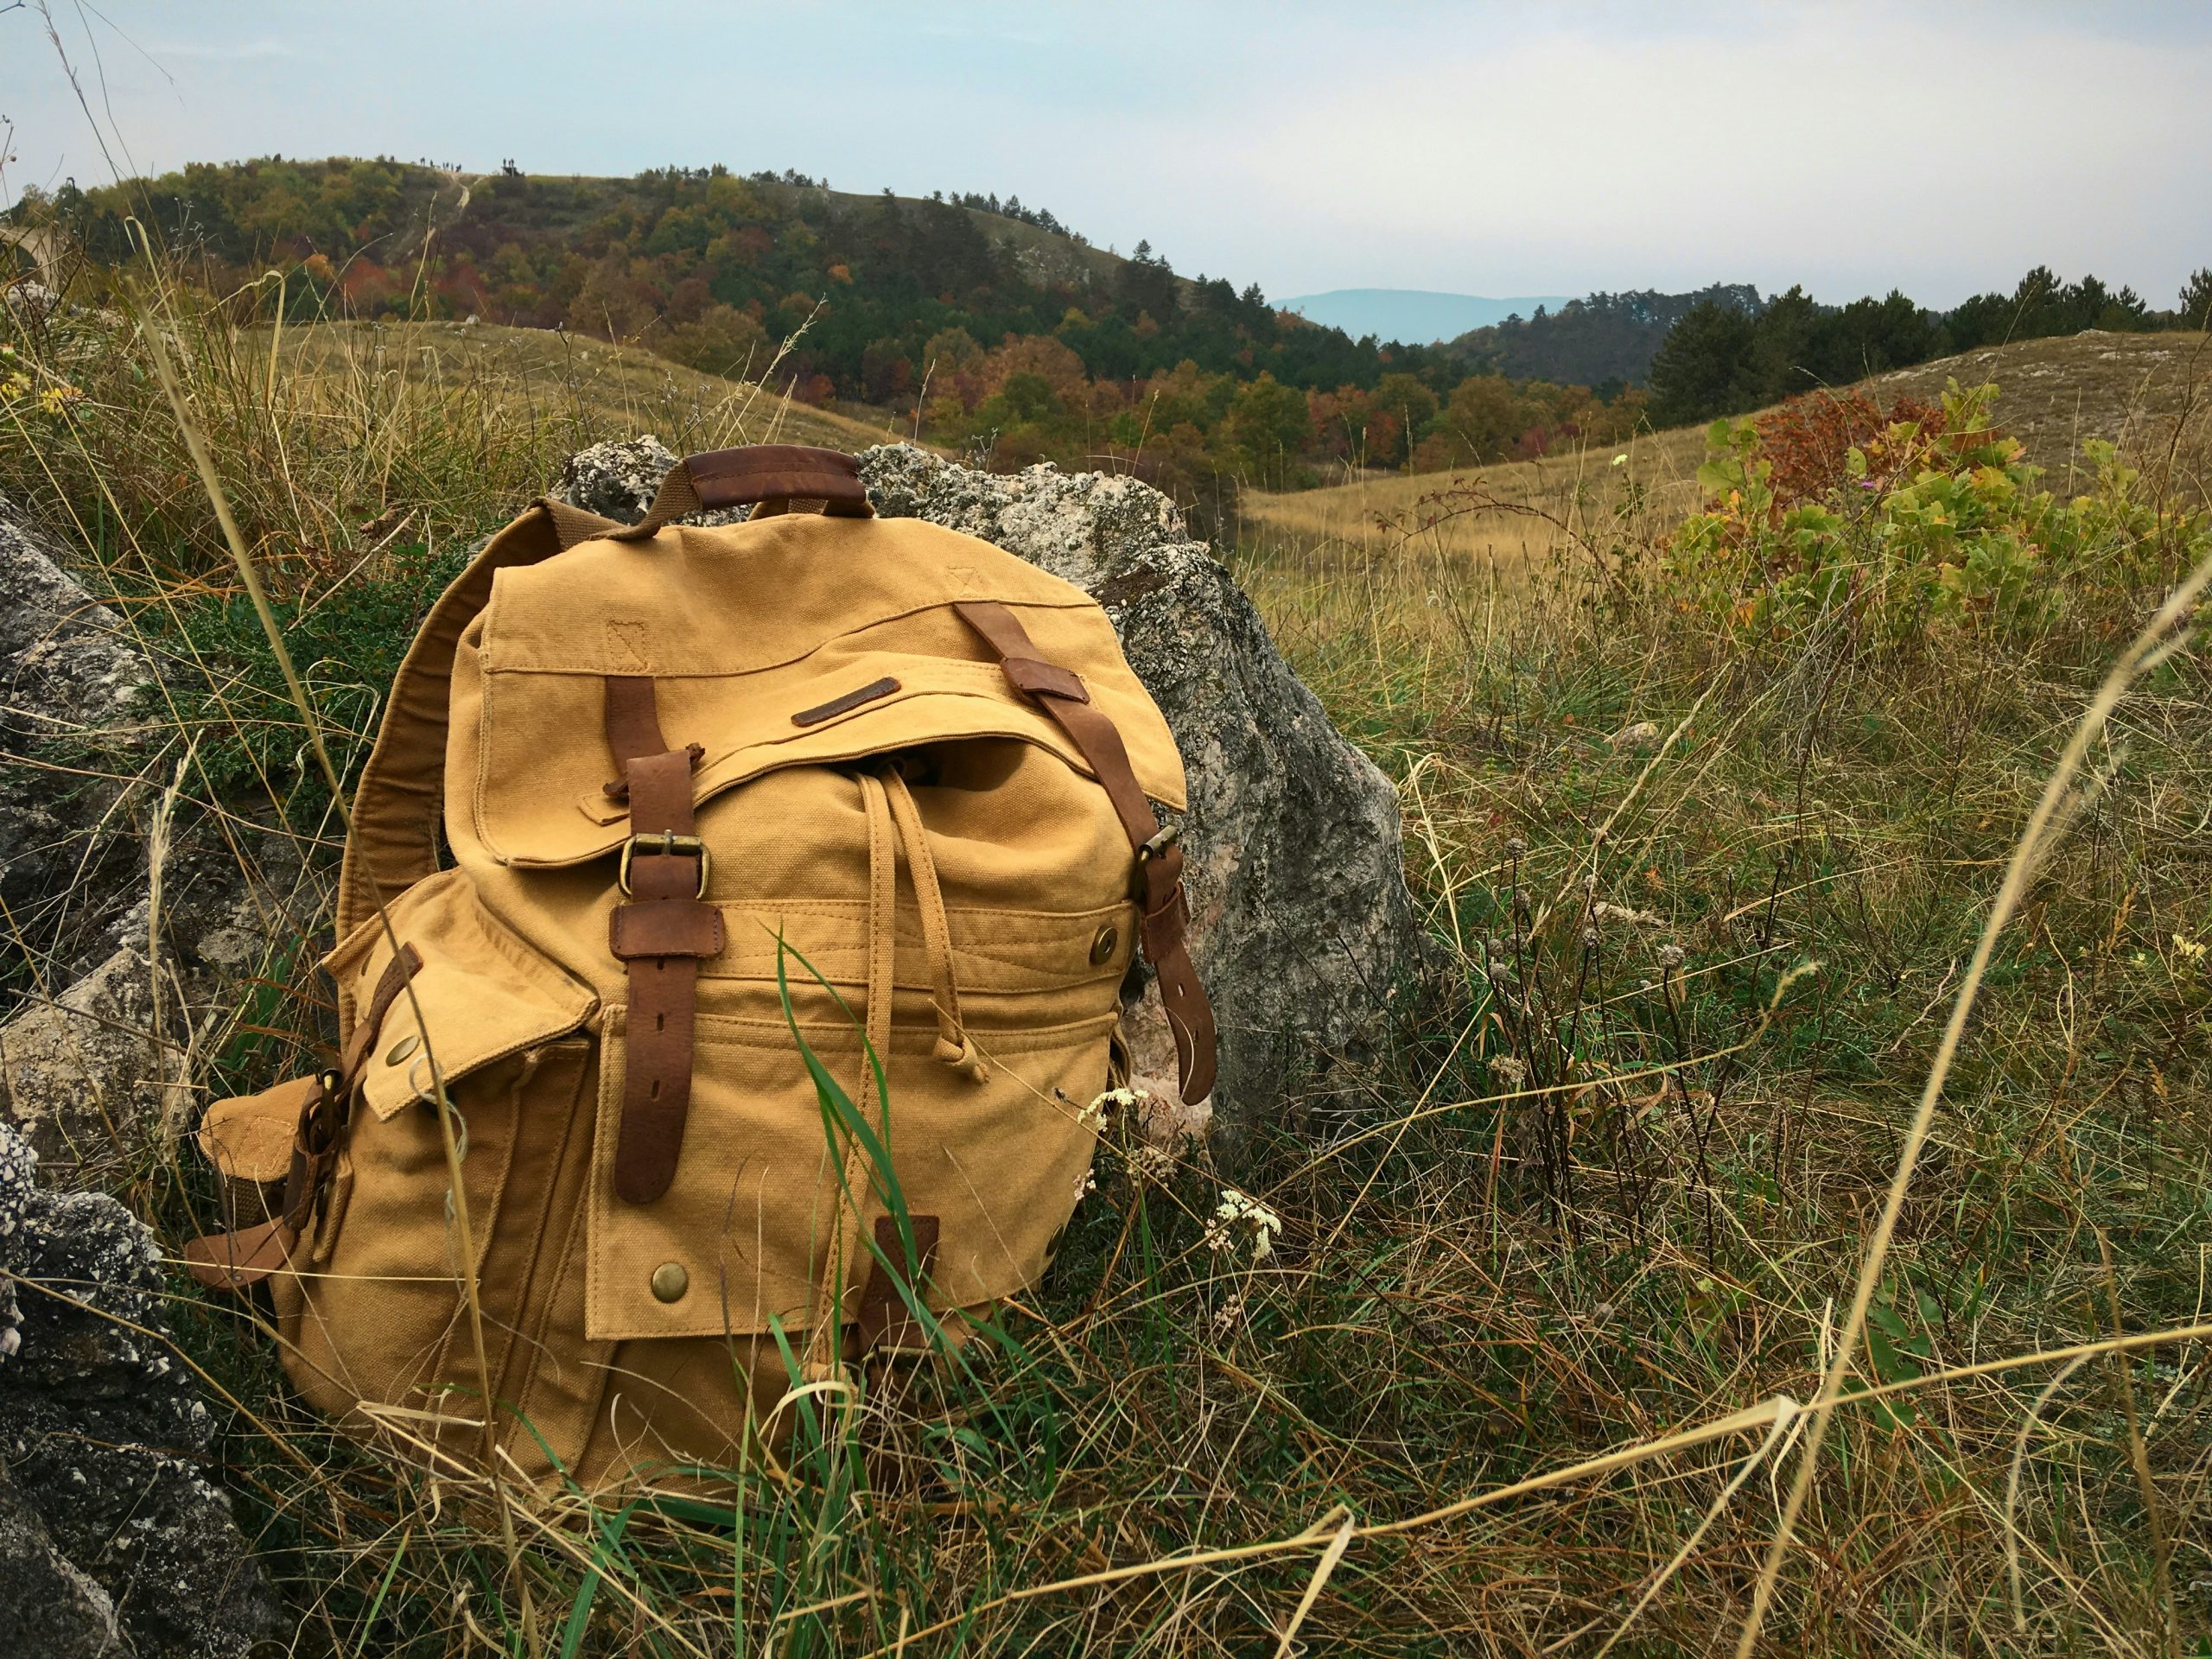 découvrez notre collection de sacs à dos pour hommes et femmes. trouvez le sac à dos idéal pour vos aventures avec notre sélection de produits de qualité.